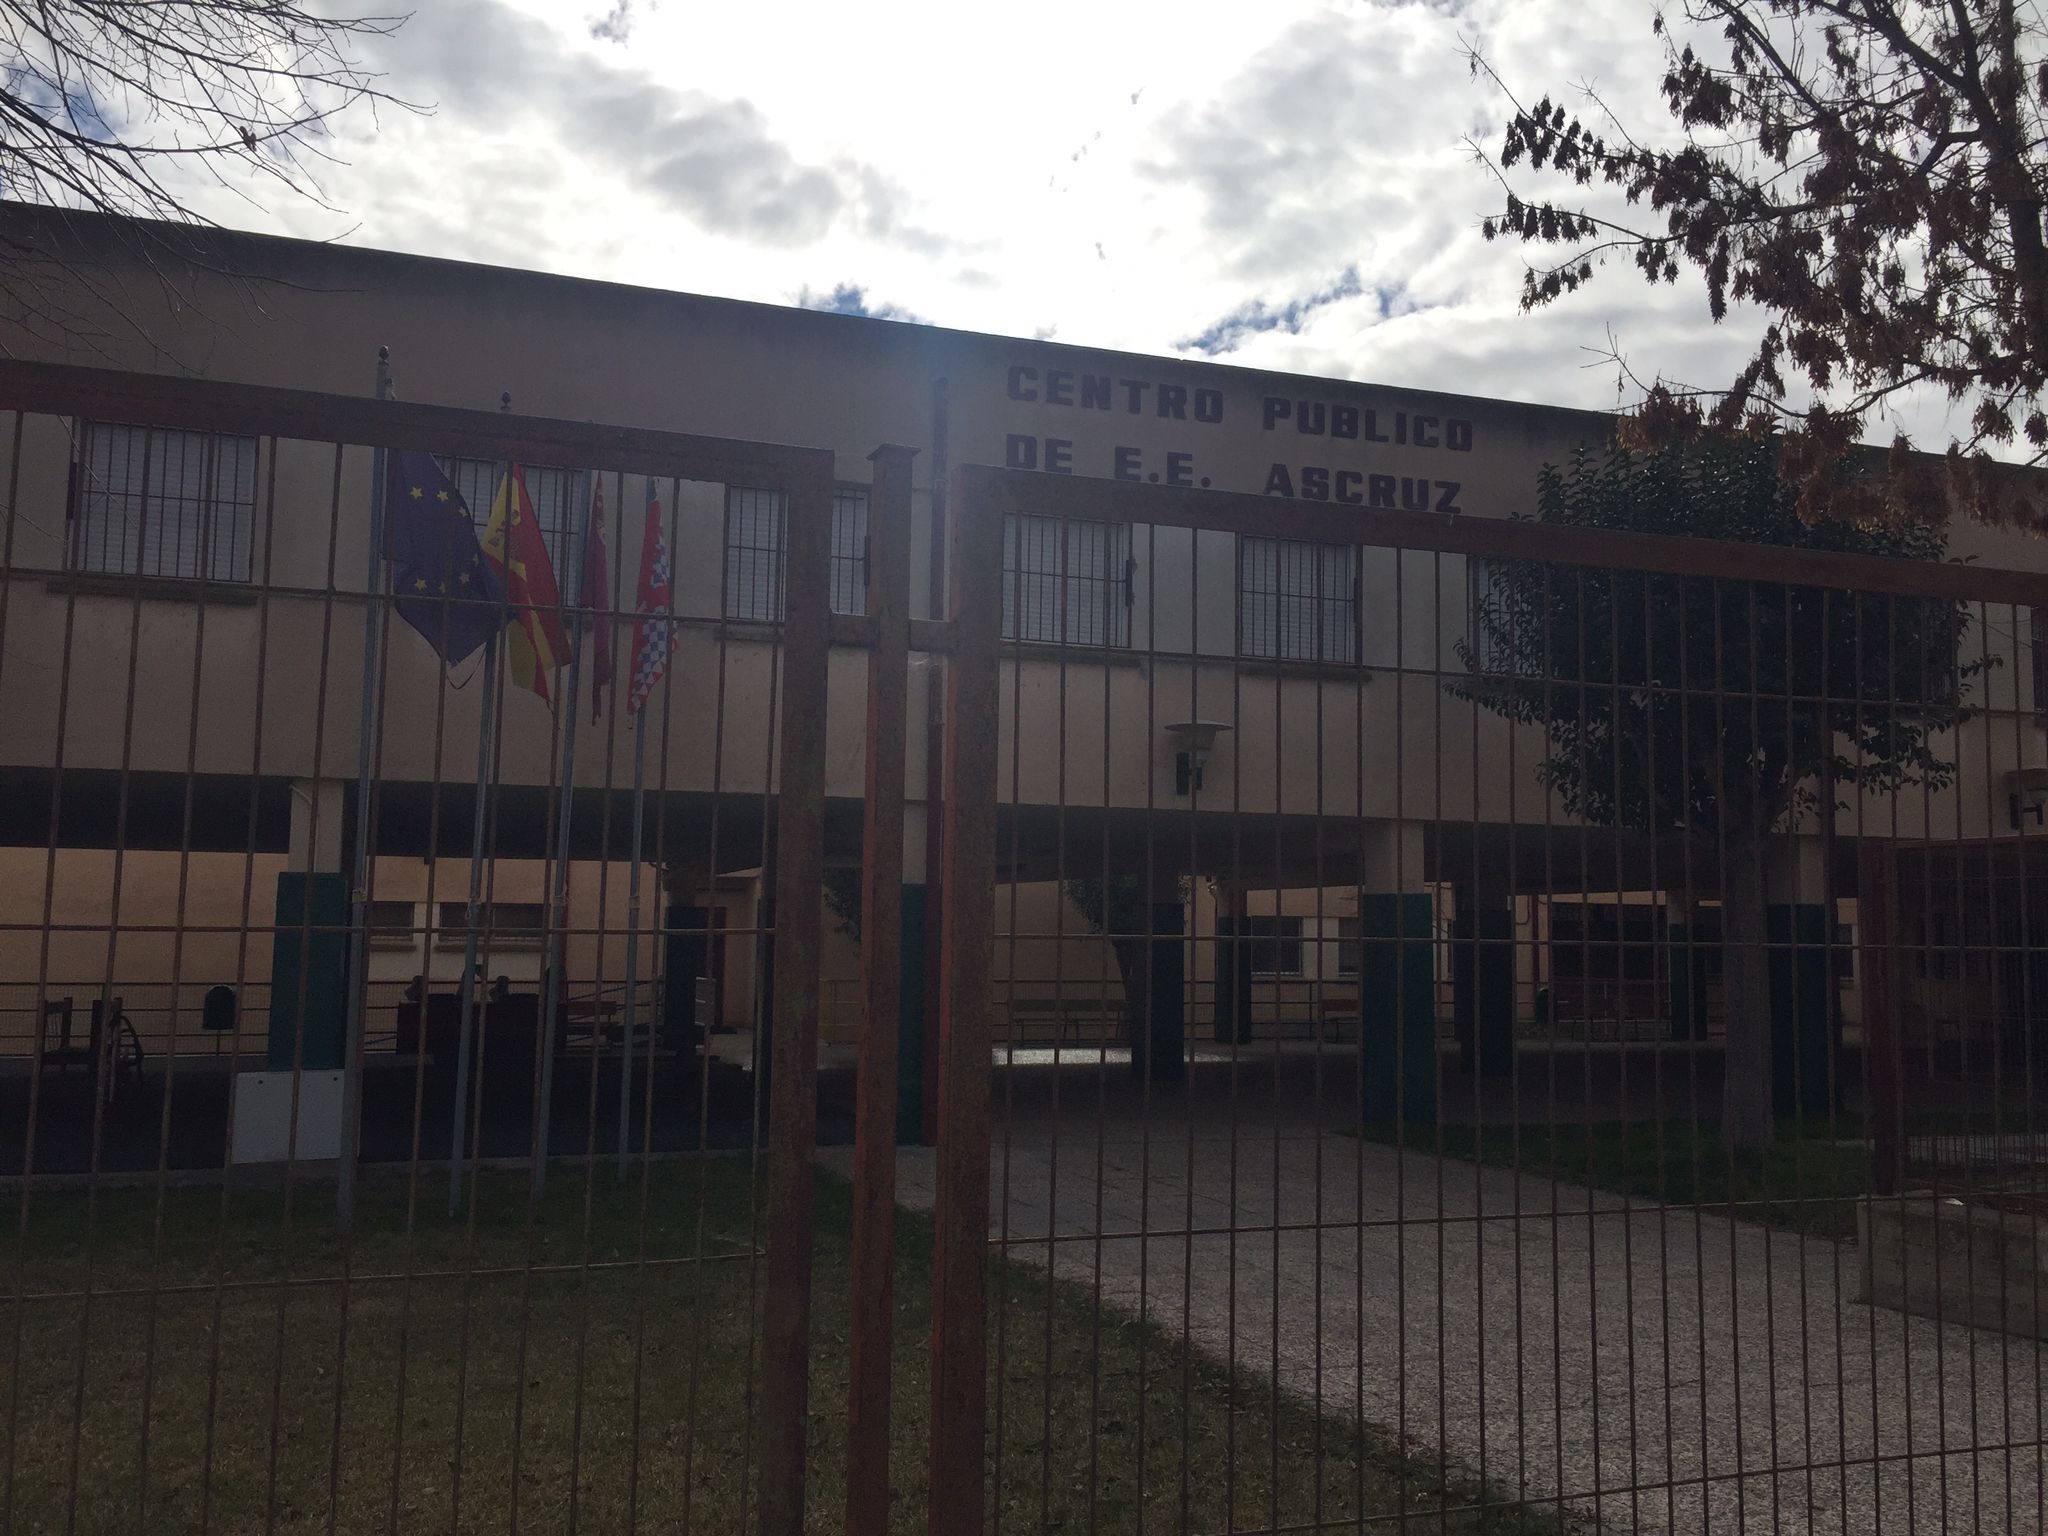 UGT Servicios Públicos denuncia que no se aplican las medidas de protección ante riesgos laborales contra la Covid al personal de ASCRUZ y Pilar Soubrier, centros escolares/residencias con usuarios vulnerables